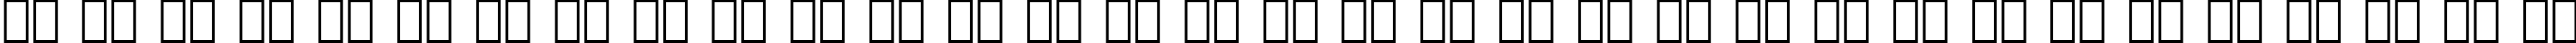 Пример написания русского алфавита шрифтом Compacta Black BT